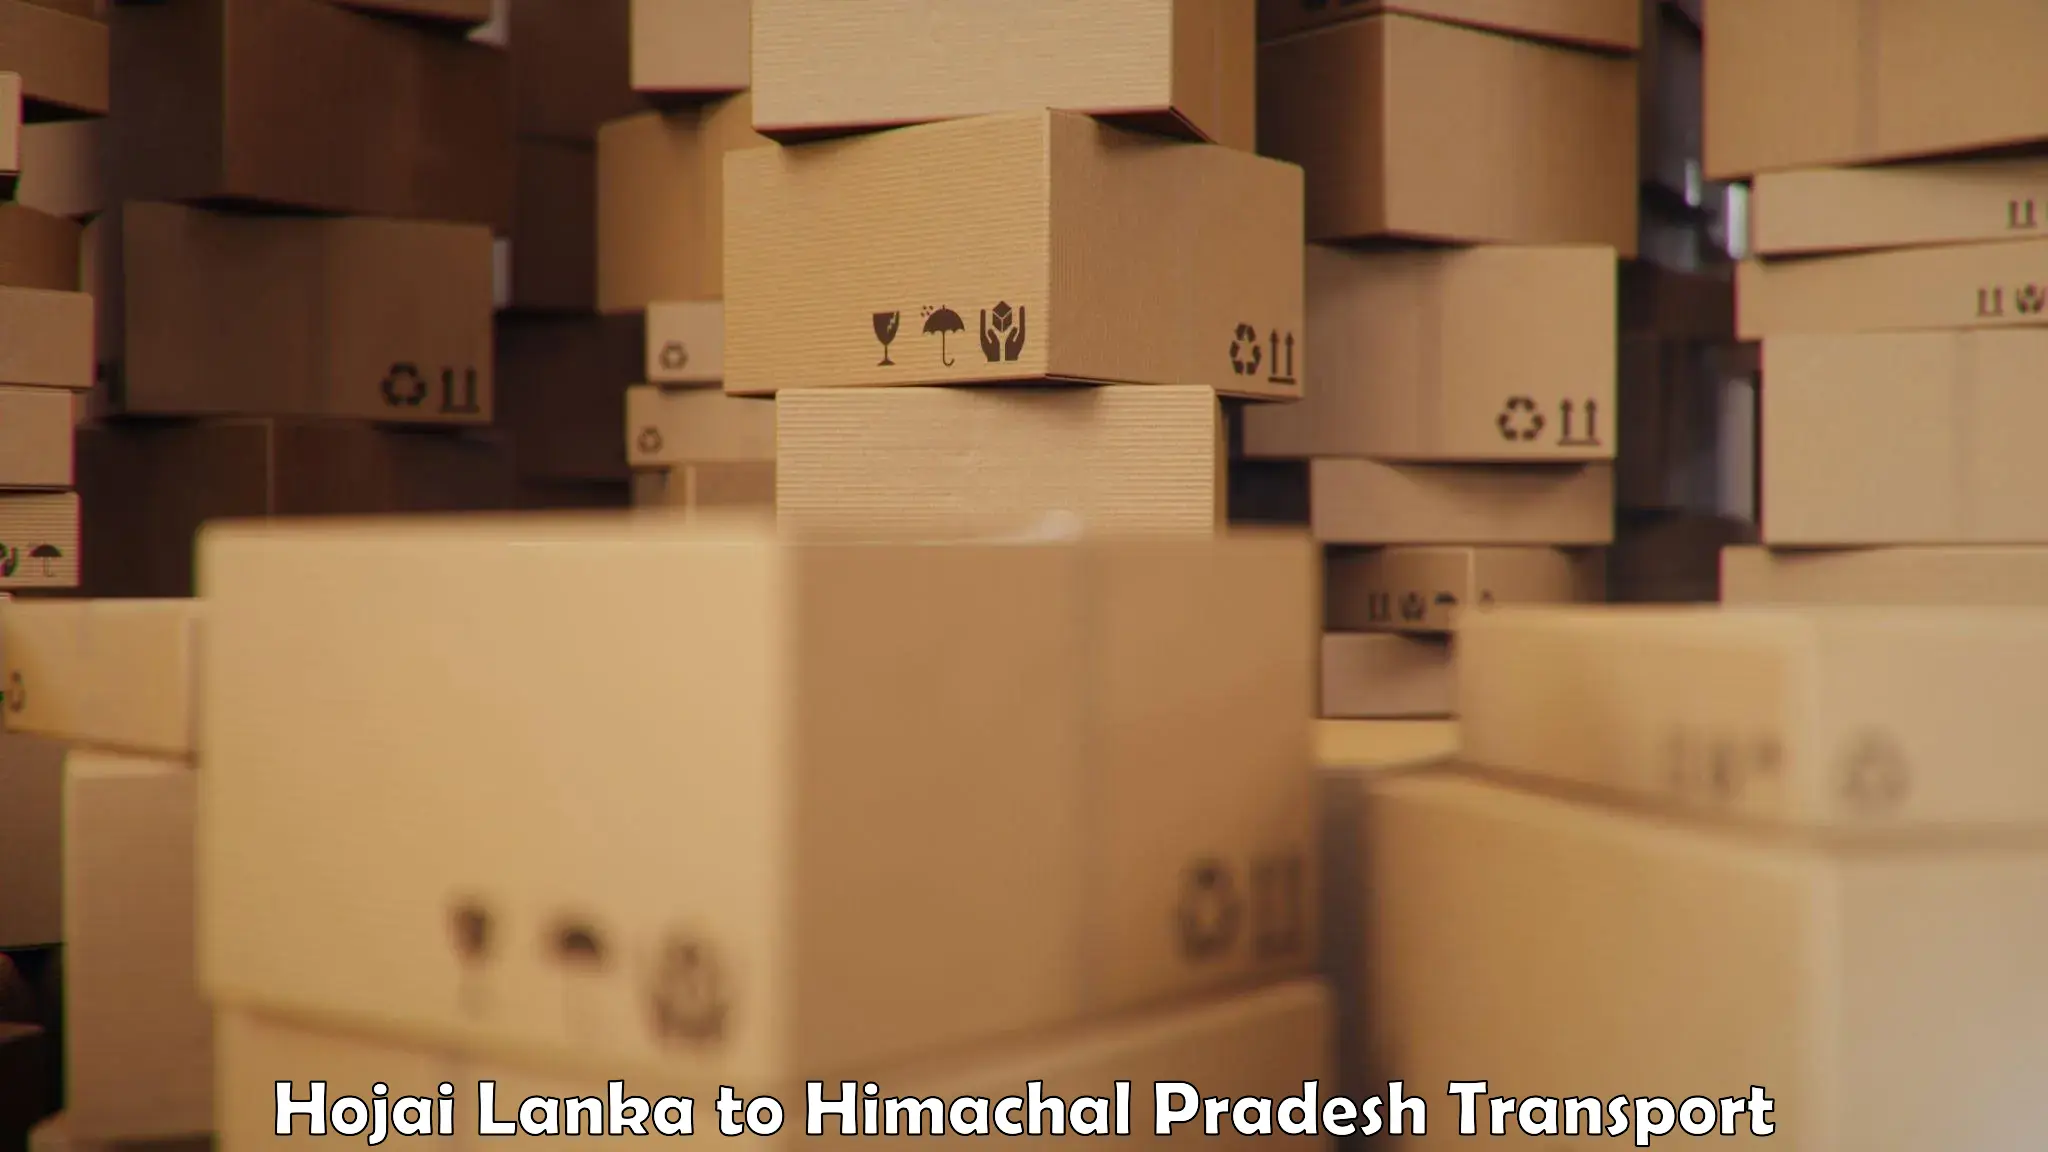 Lorry transport service Hojai Lanka to Nalagarh